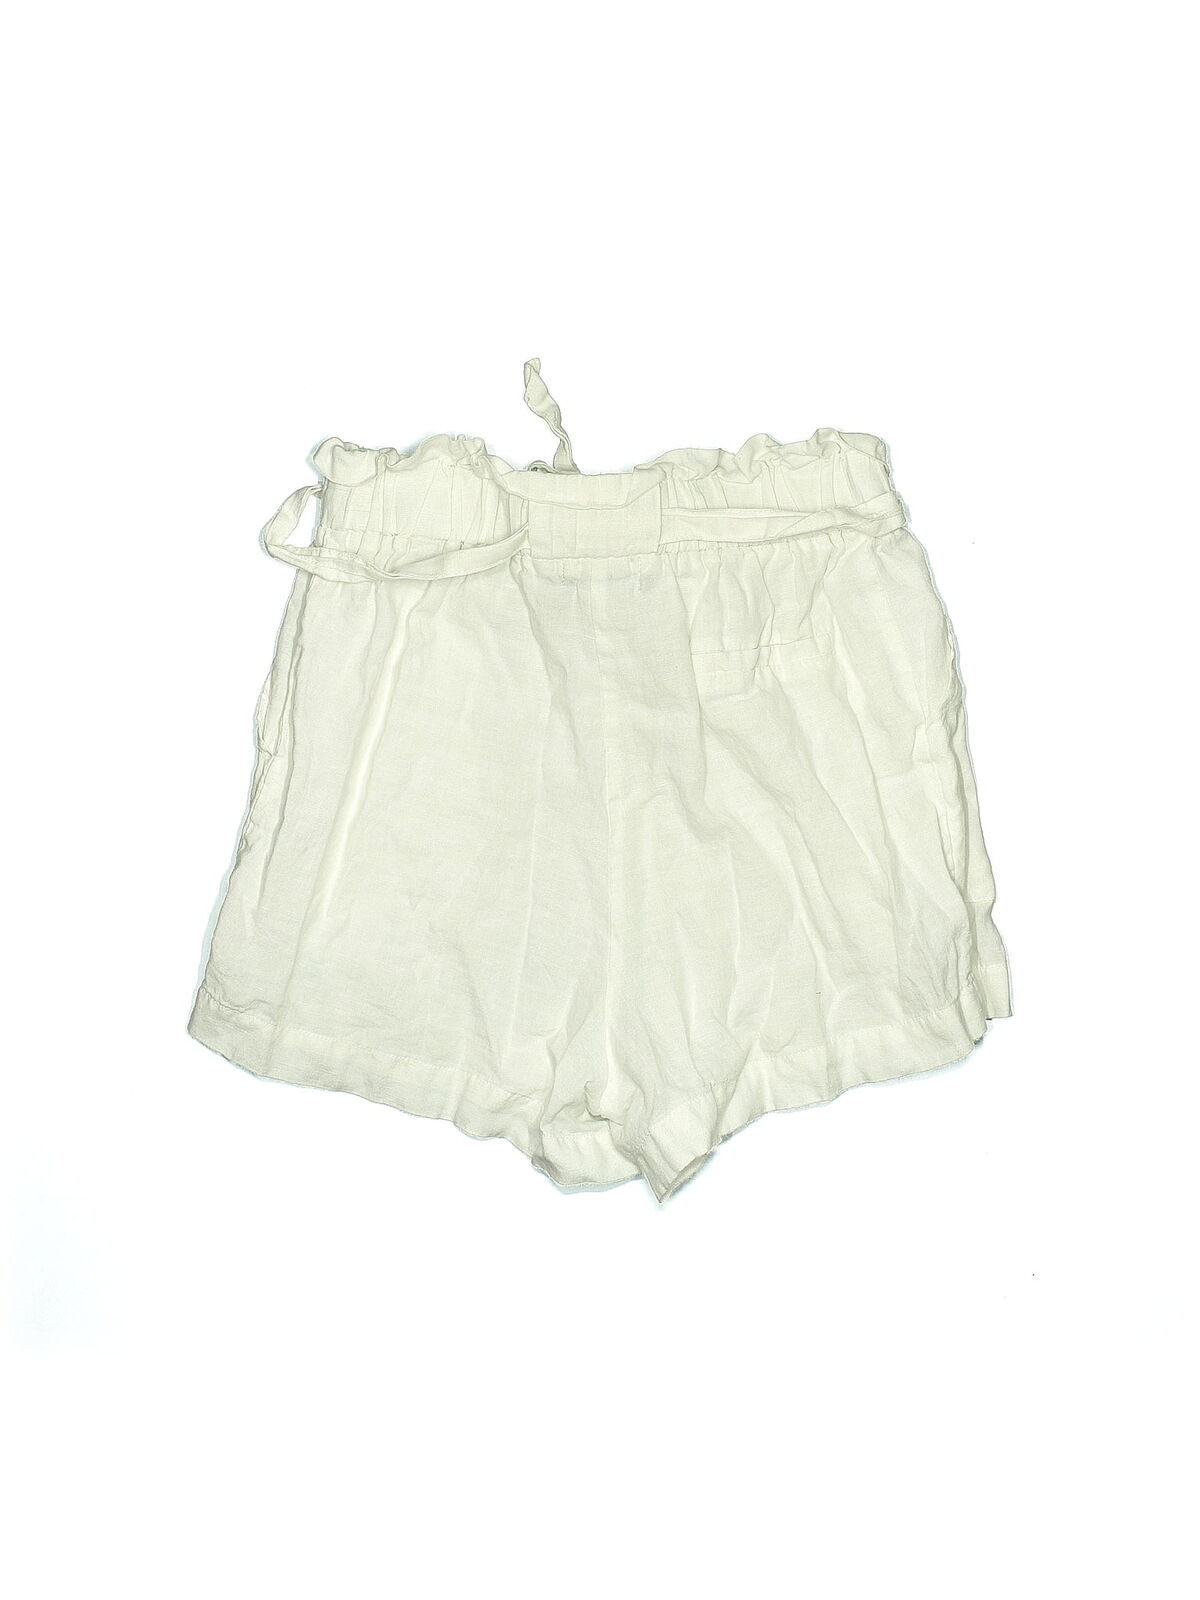 Etiquette Women Ivory Shorts M - image 2